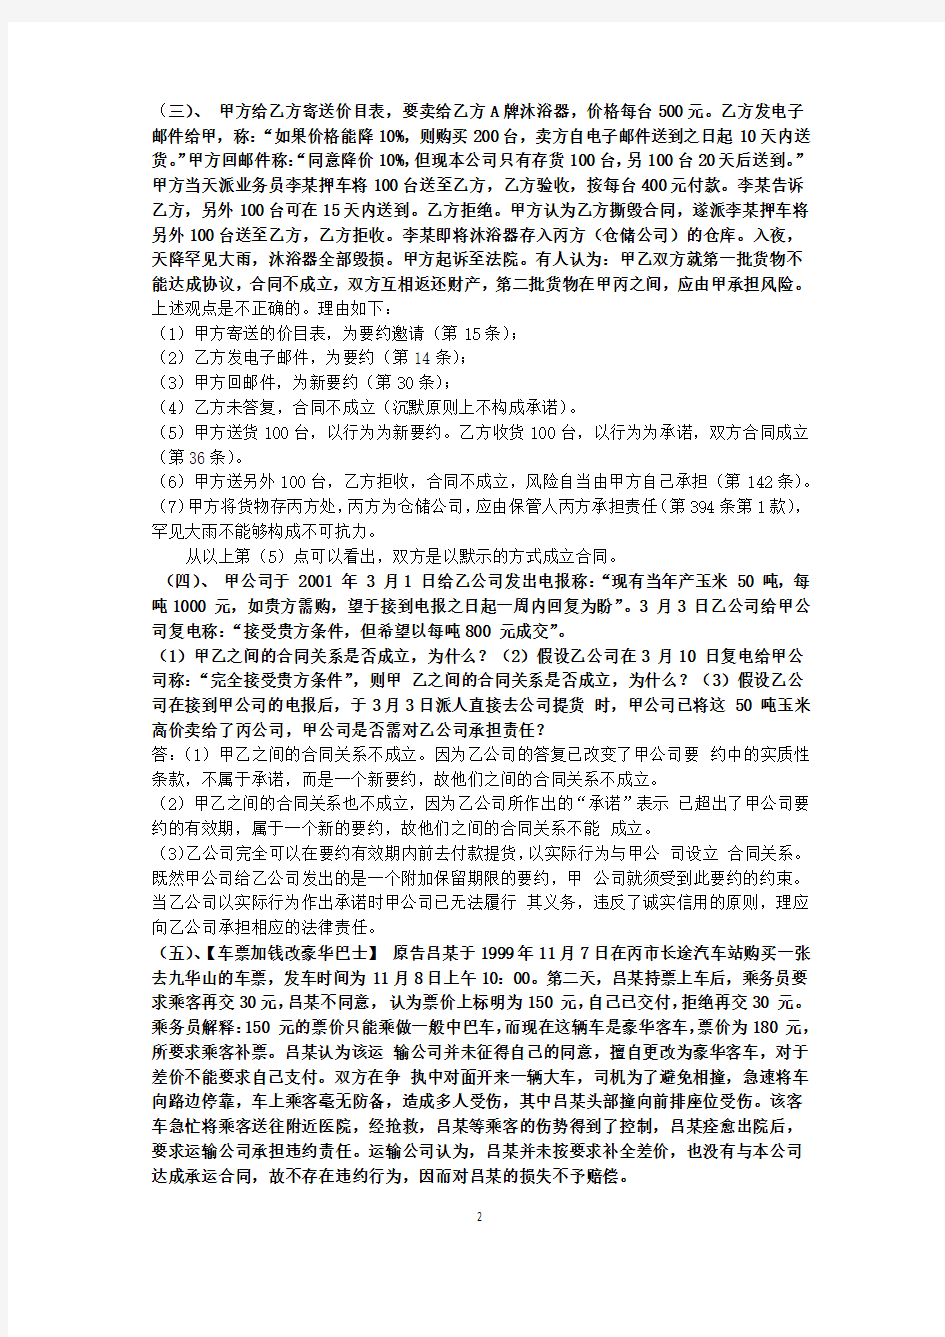 经济法 考试案例分析题 总结 期末复习重点 上海工程技术大学 2013-2014